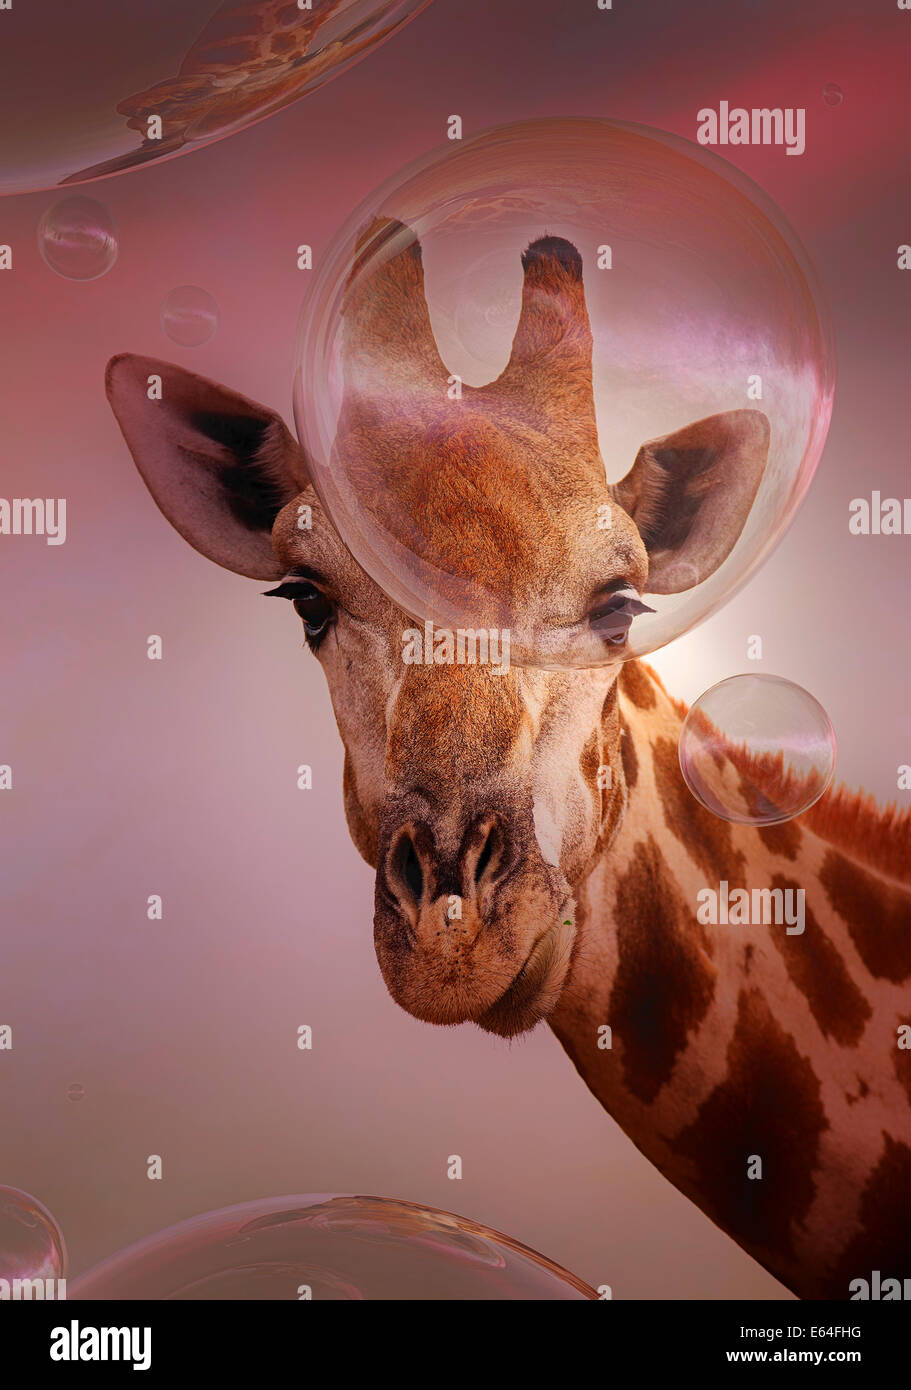 Girafe à flottante à bulles de savon - art numérique Banque D'Images